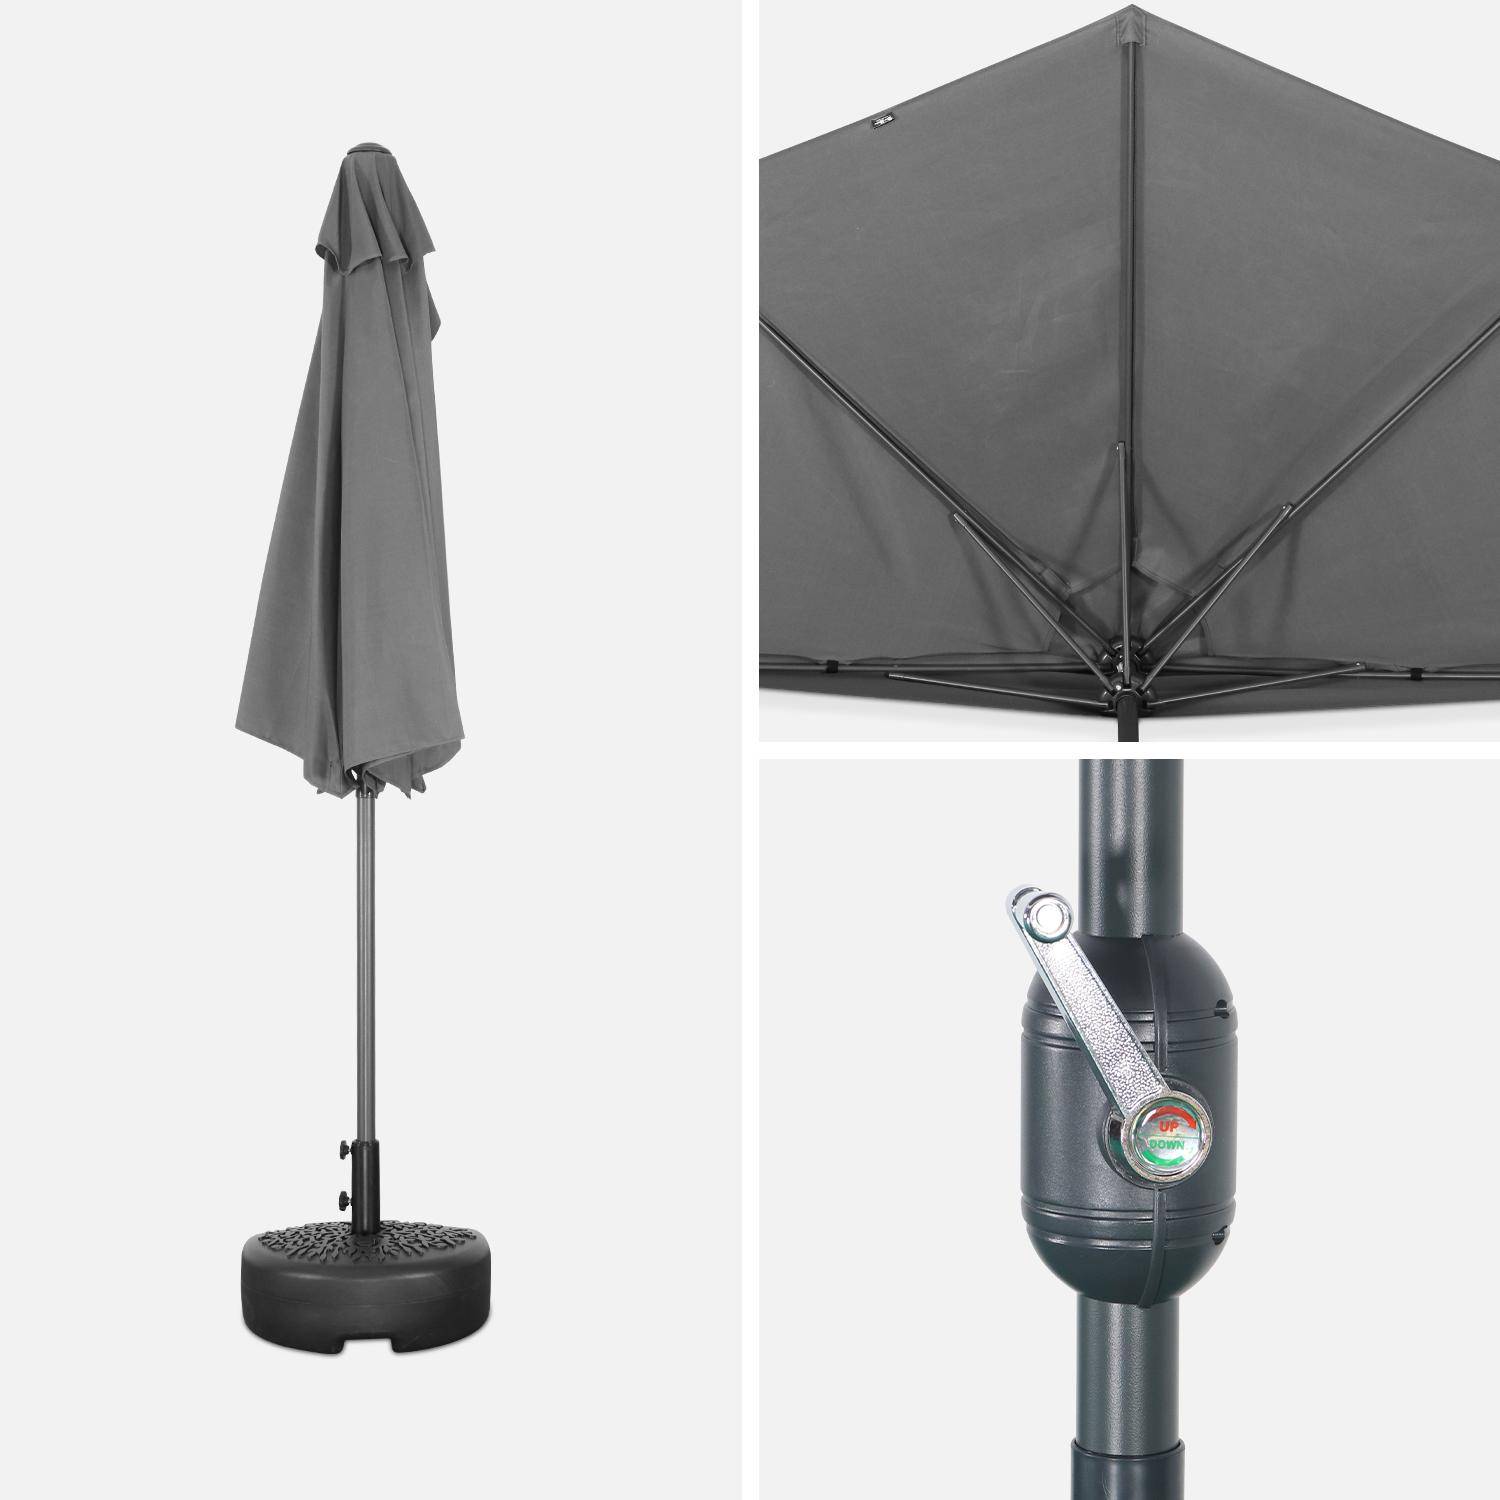  Parasol para balcón Ø250cm - CALVI - Medio parasol recto, mástil de aluminio con manivela, tejido gris,sweeek,Photo5